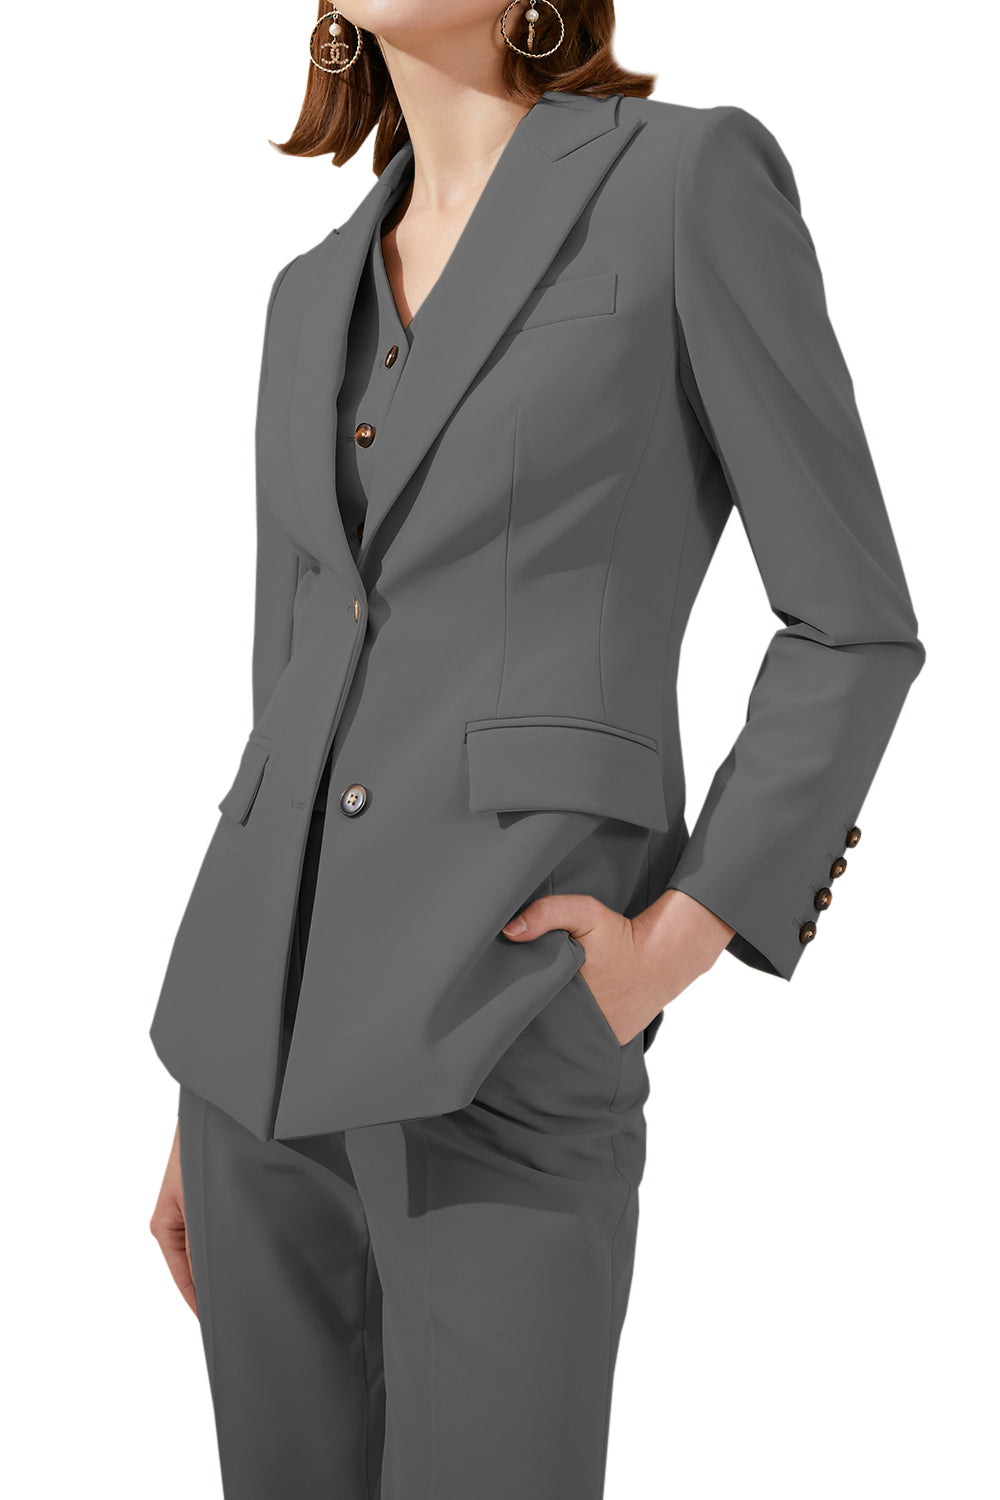 3 Piece Business Peak Lapel Slim Fit Women Suit